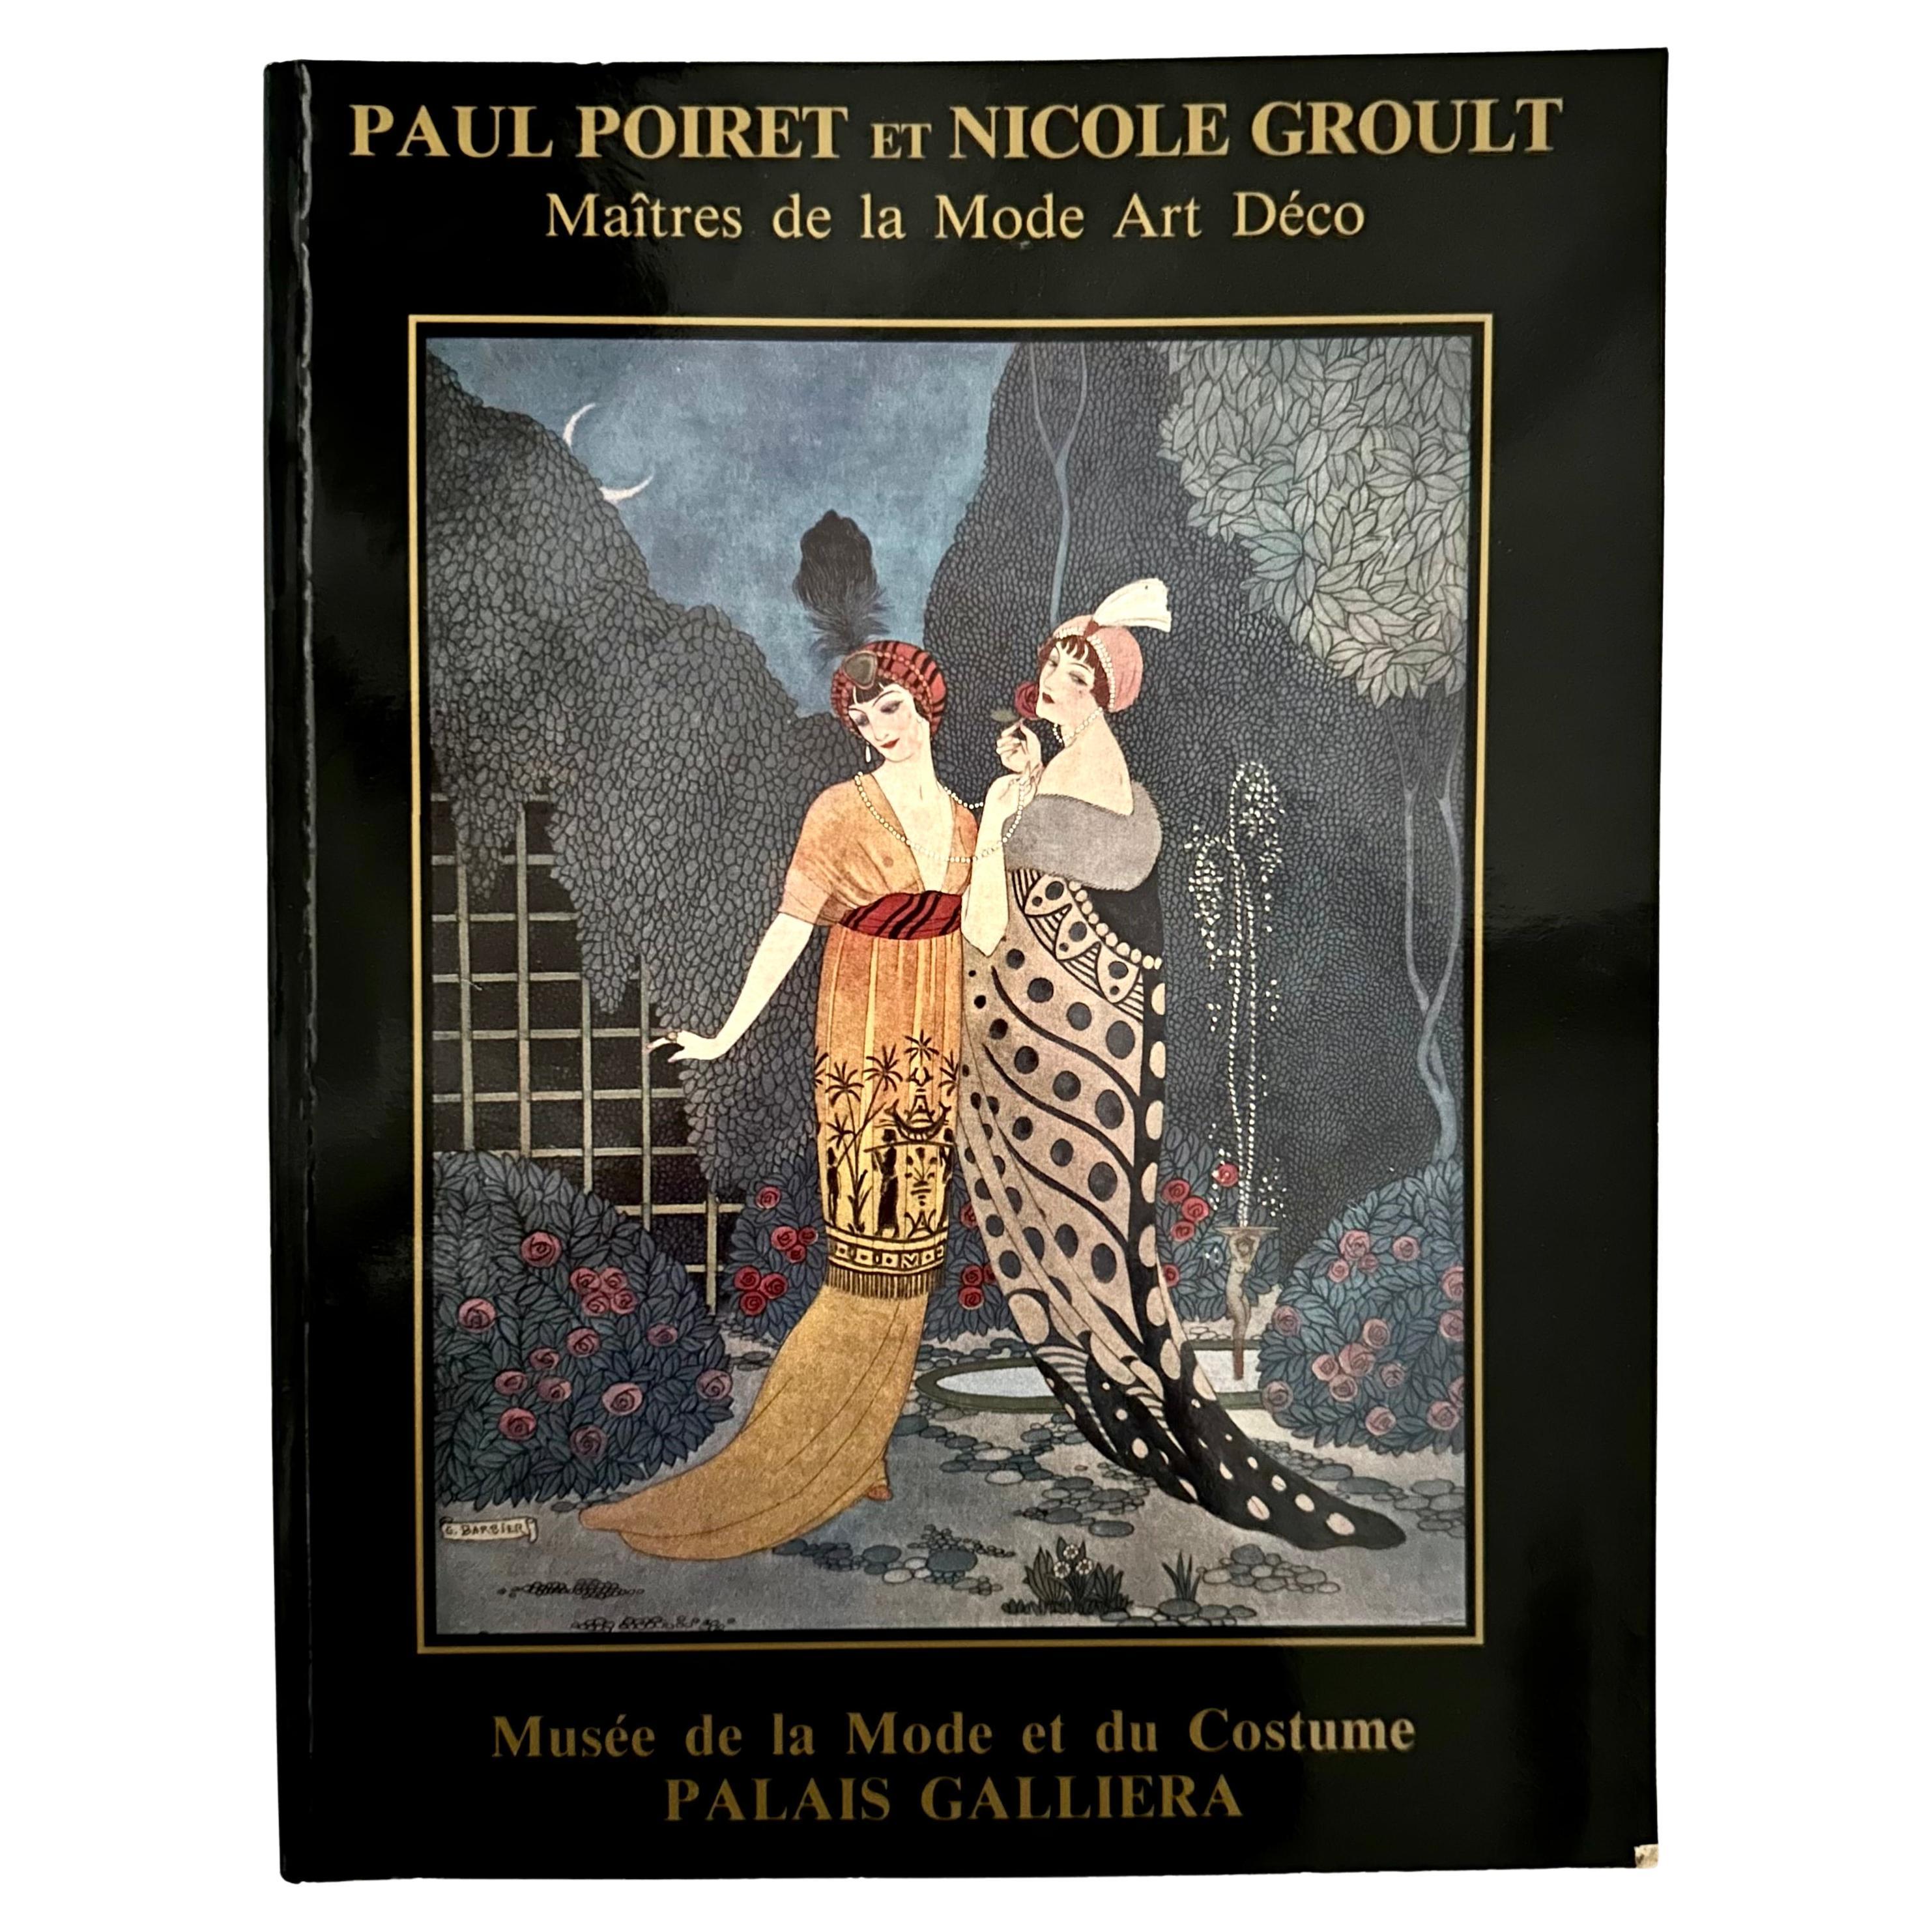 Paul Poiret et Nicole Groult: Maître de la Mode Art Déco - 1st Ed., Paris, 1986 For Sale